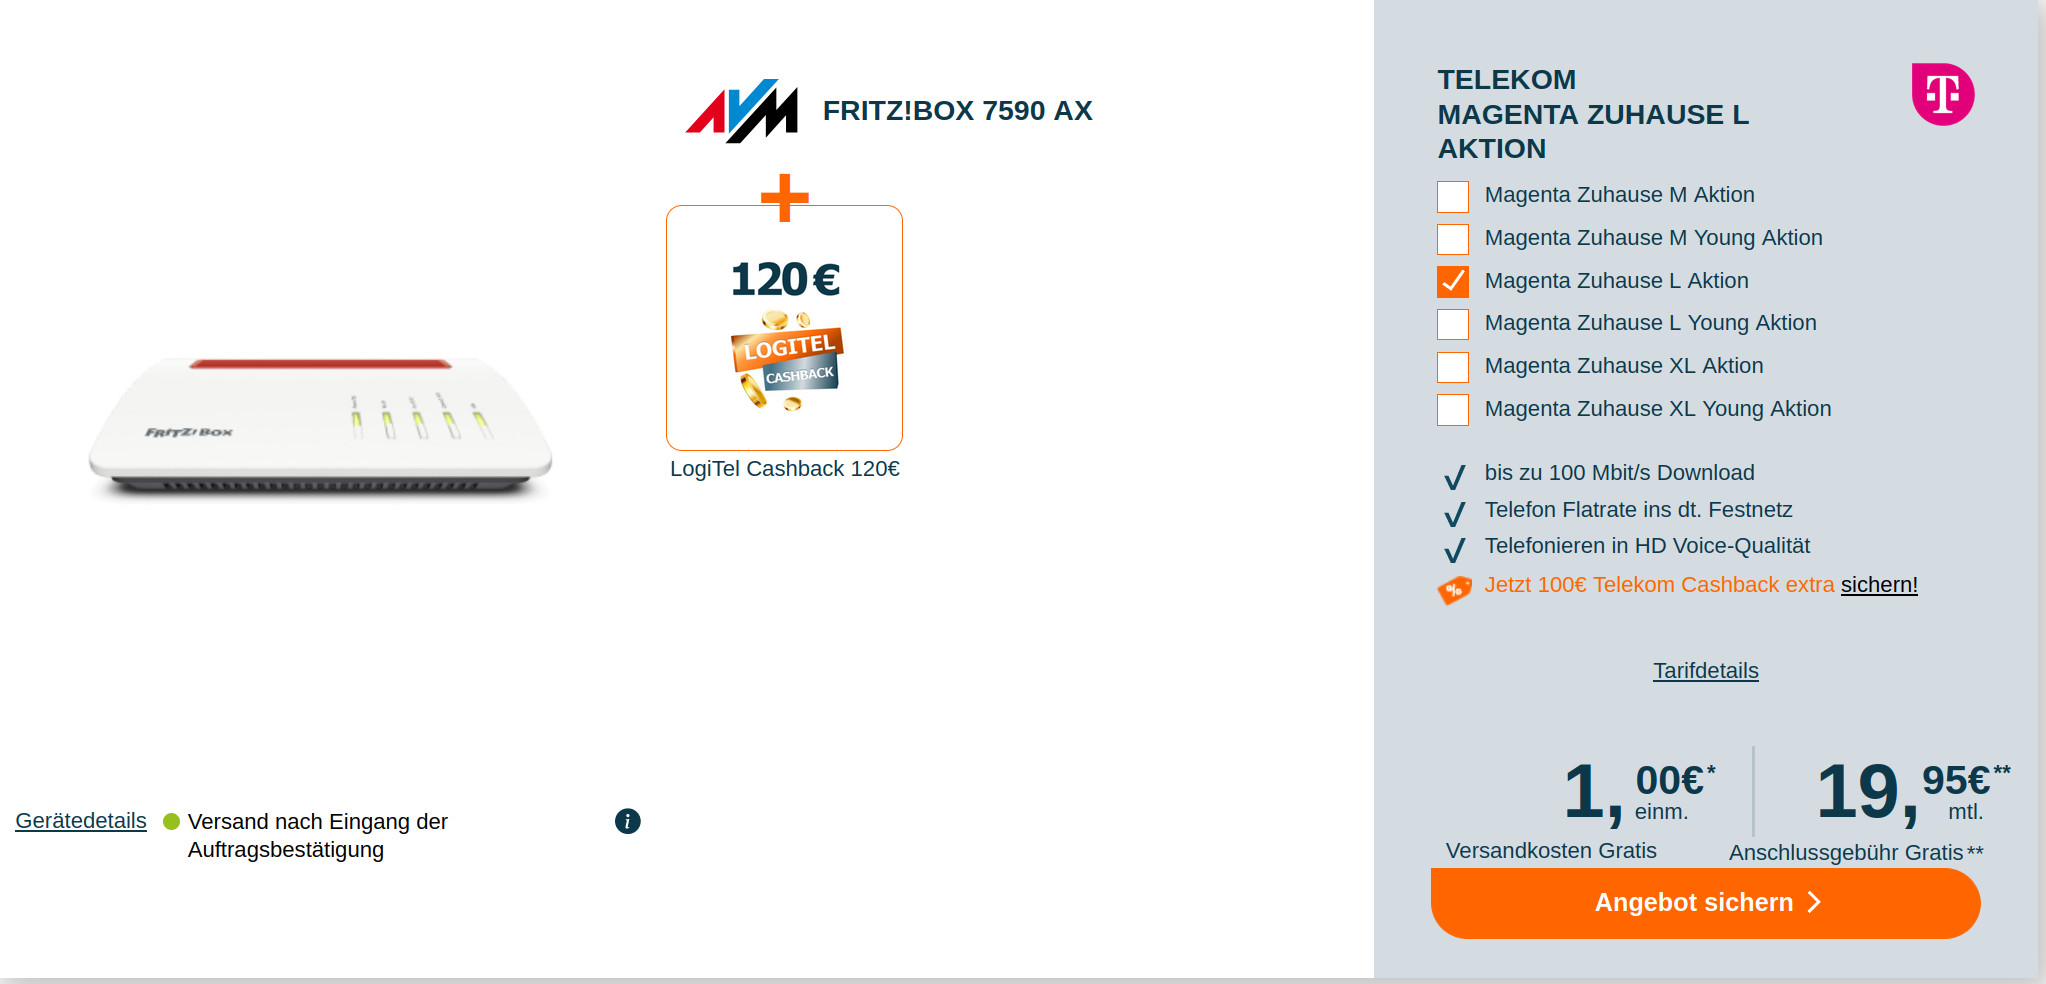 Telekom Magenta Zuhause: 220 Euro Cashback mit Fritzbox 7590 AX fr mtl. 19,95 Euro